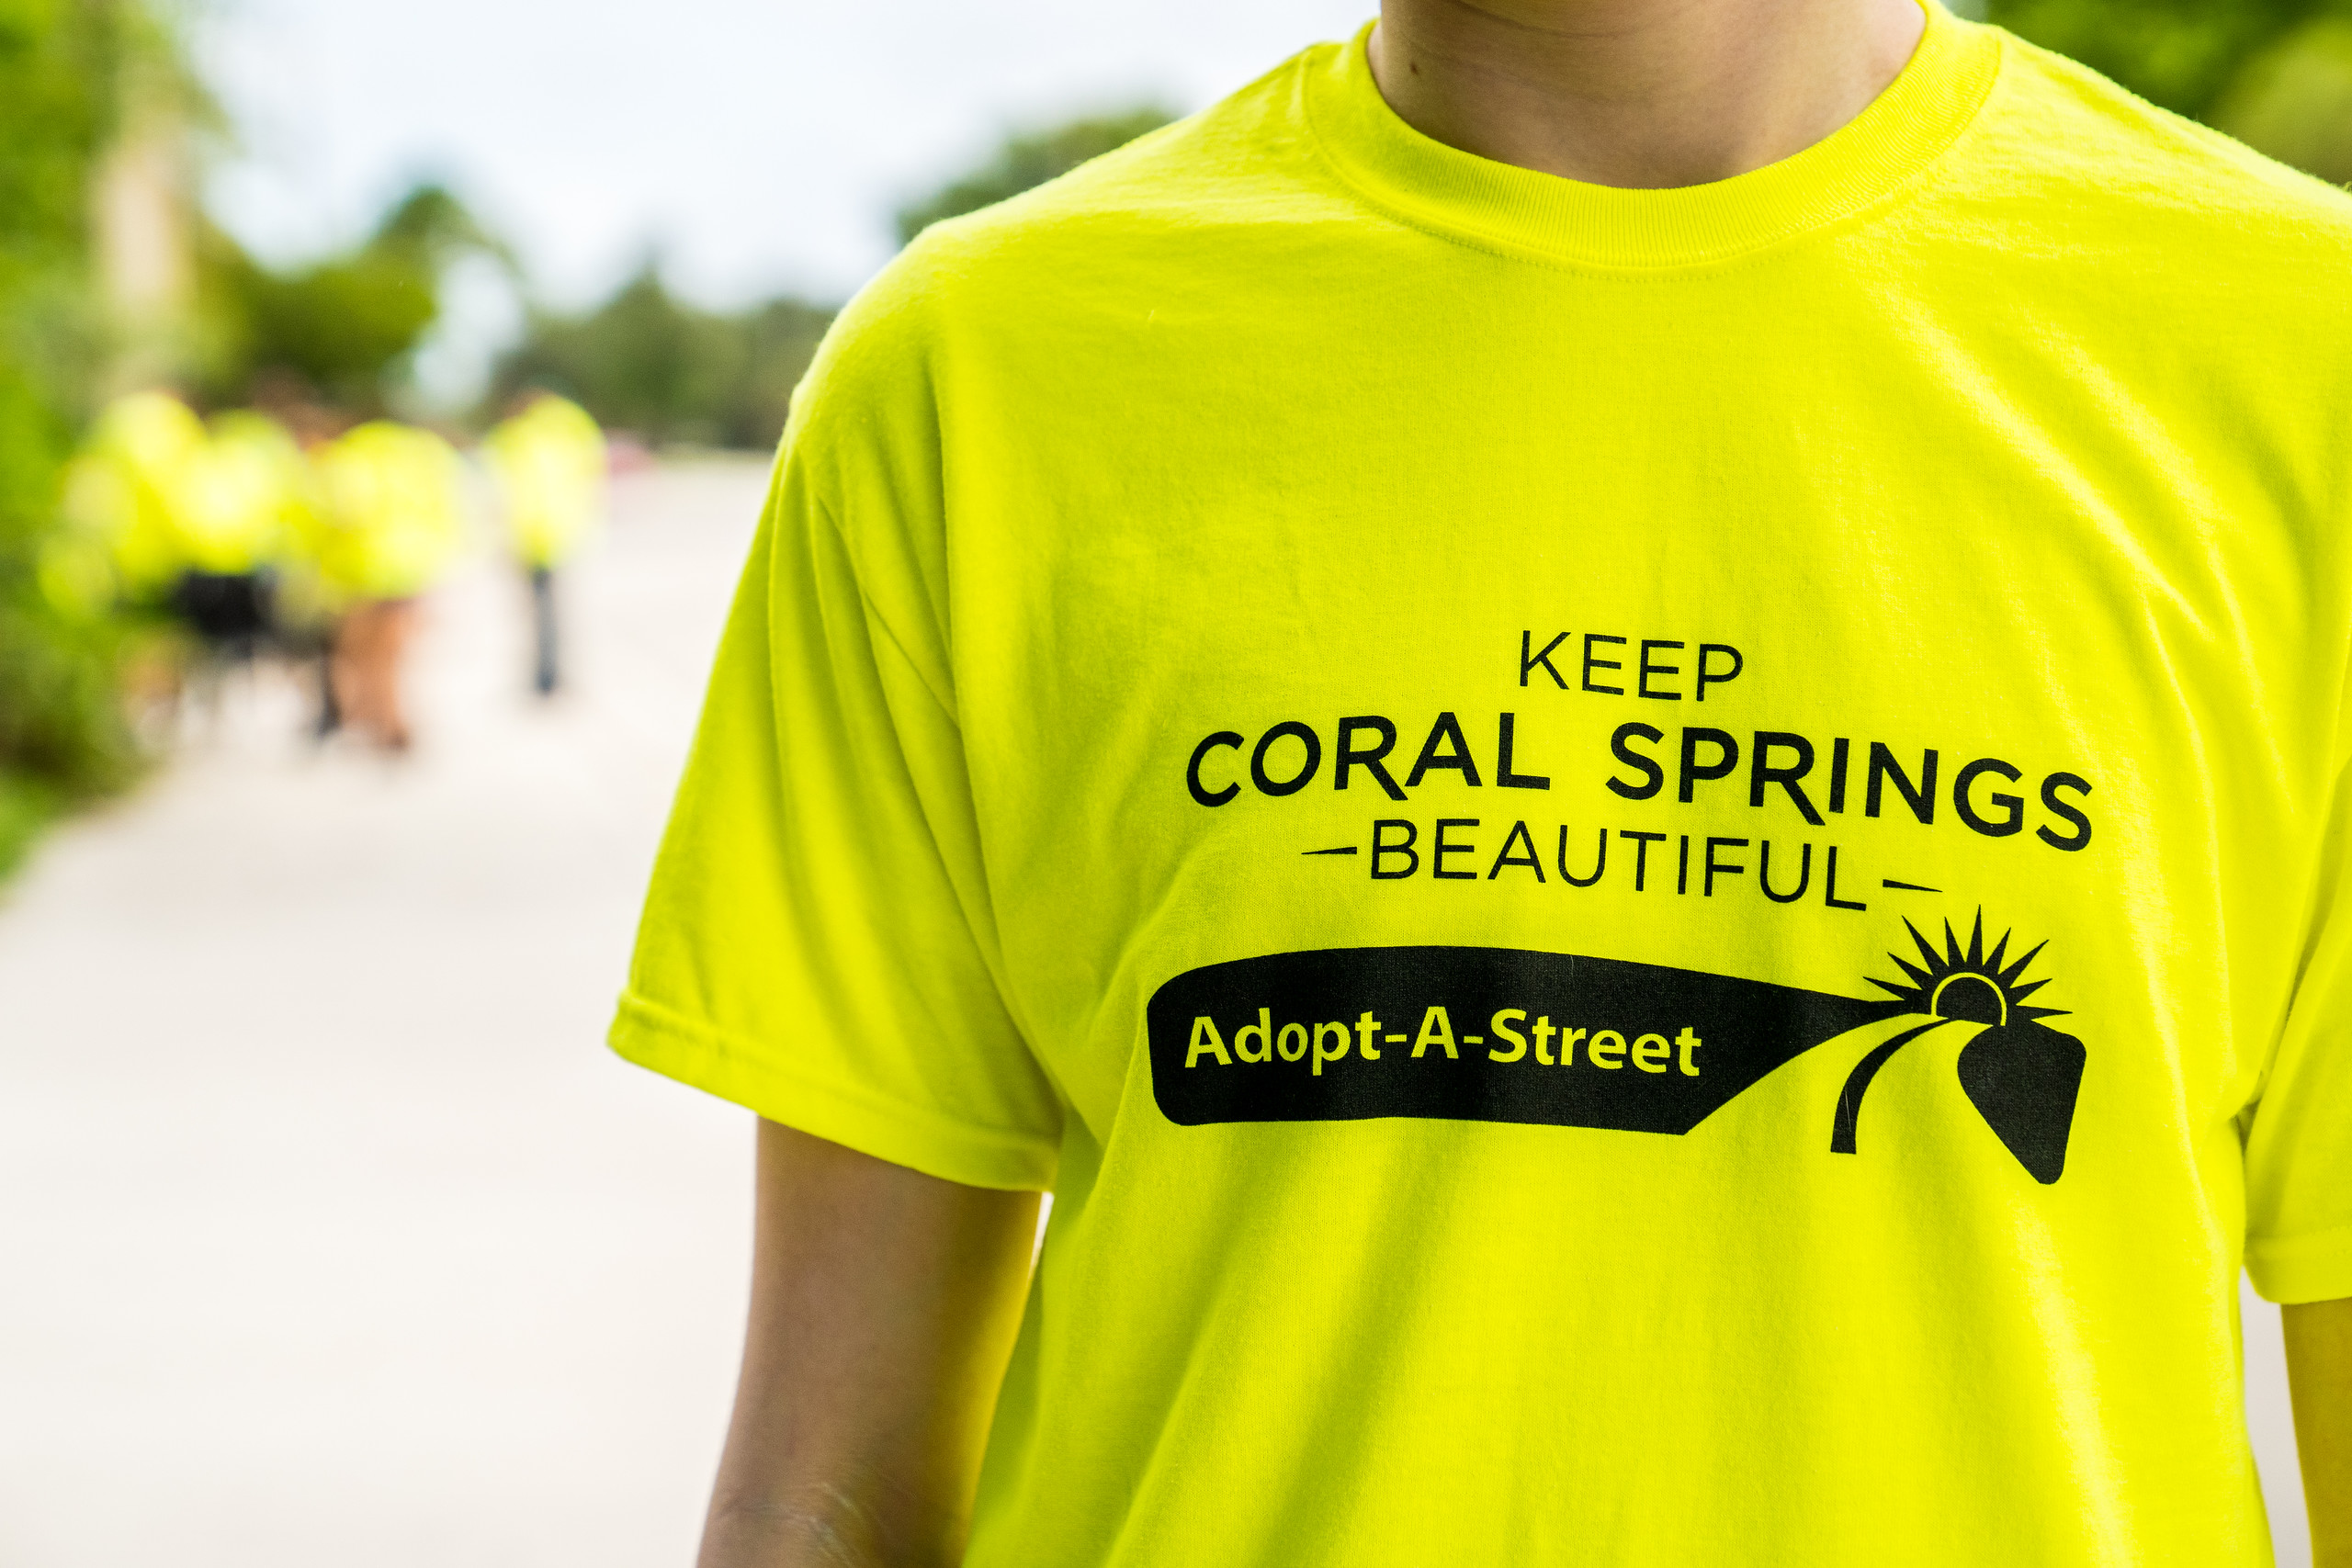 Earn Service Hours: Volunteers Needed to Help Beautify Coral Springs